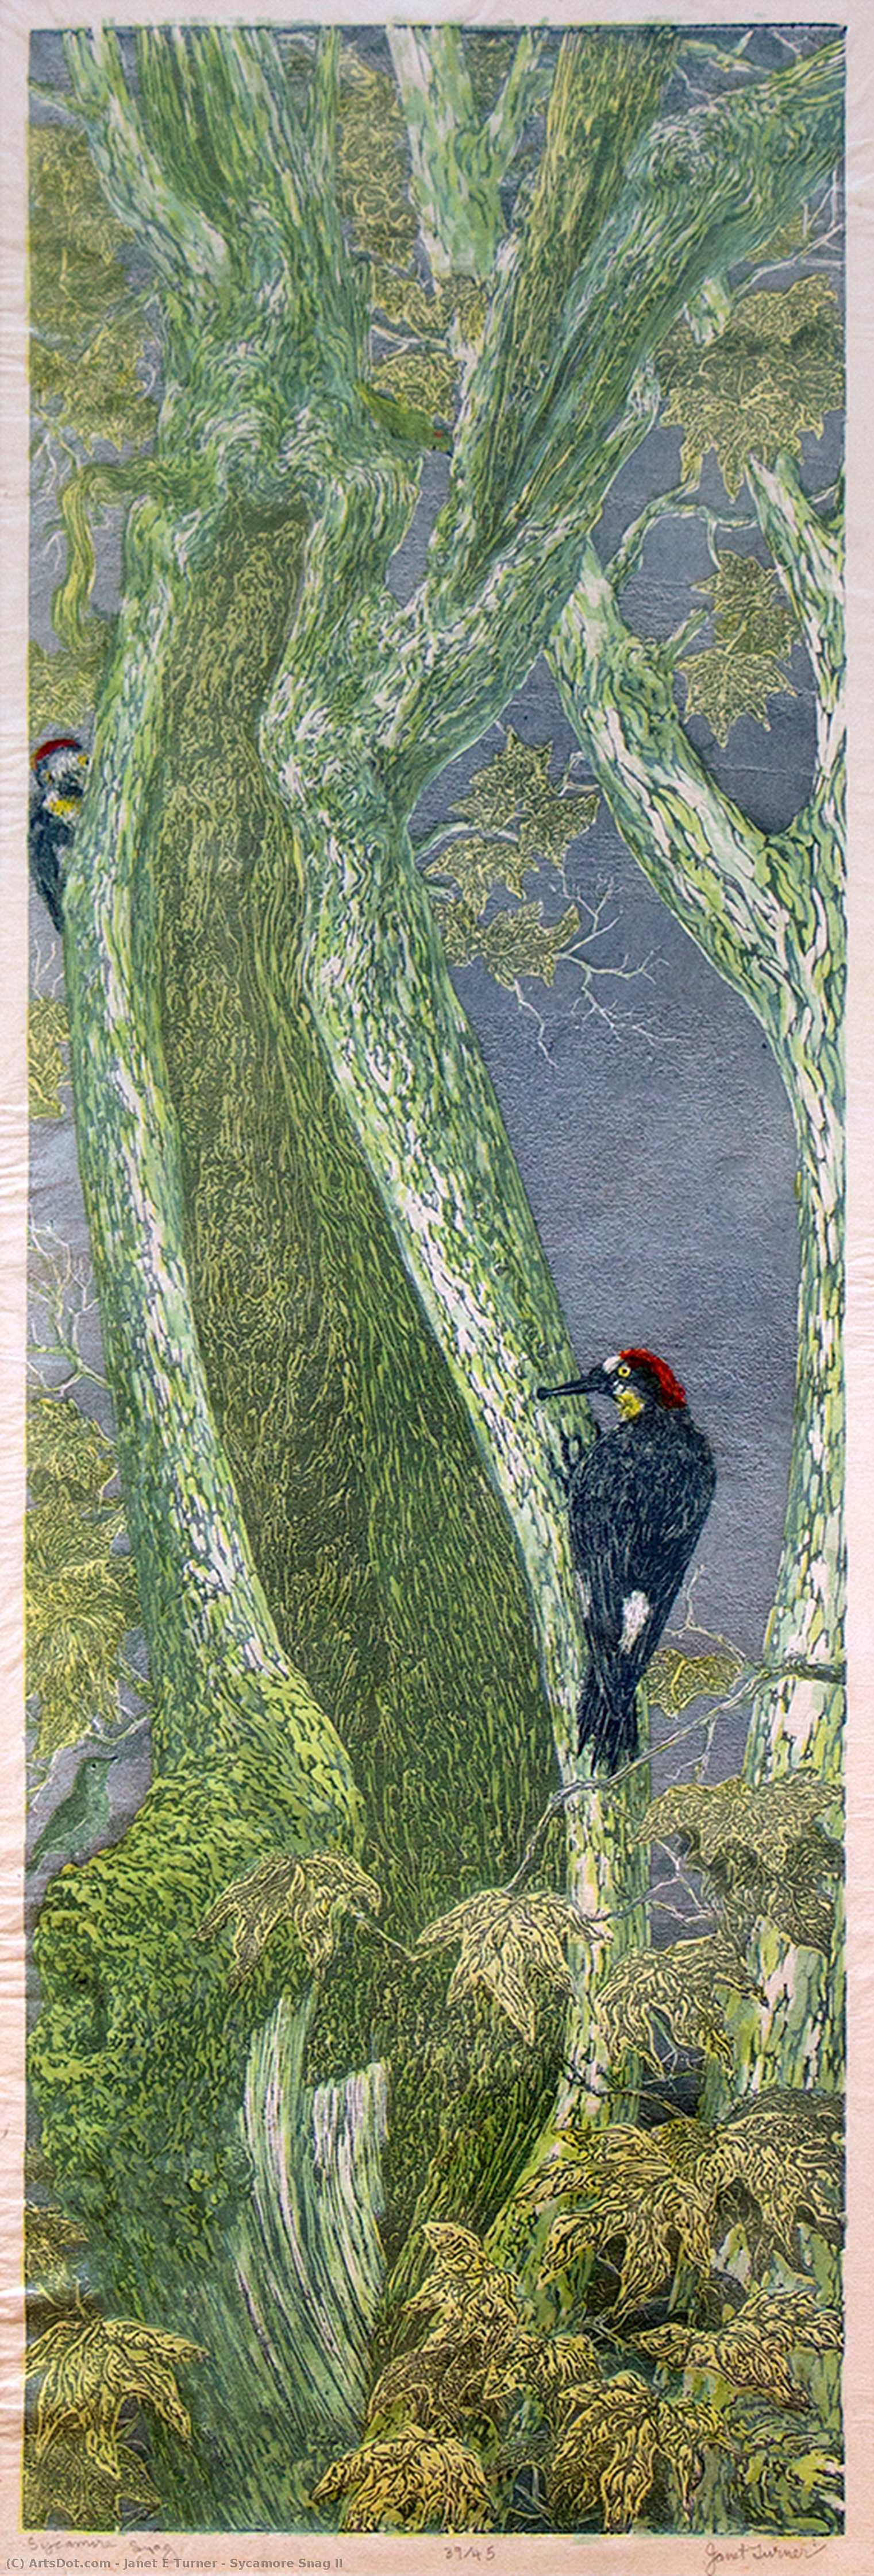 Wikioo.org - Bách khoa toàn thư về mỹ thuật - Vẽ tranh, Tác phẩm nghệ thuật Janet E Turner - Sycamore Snag II